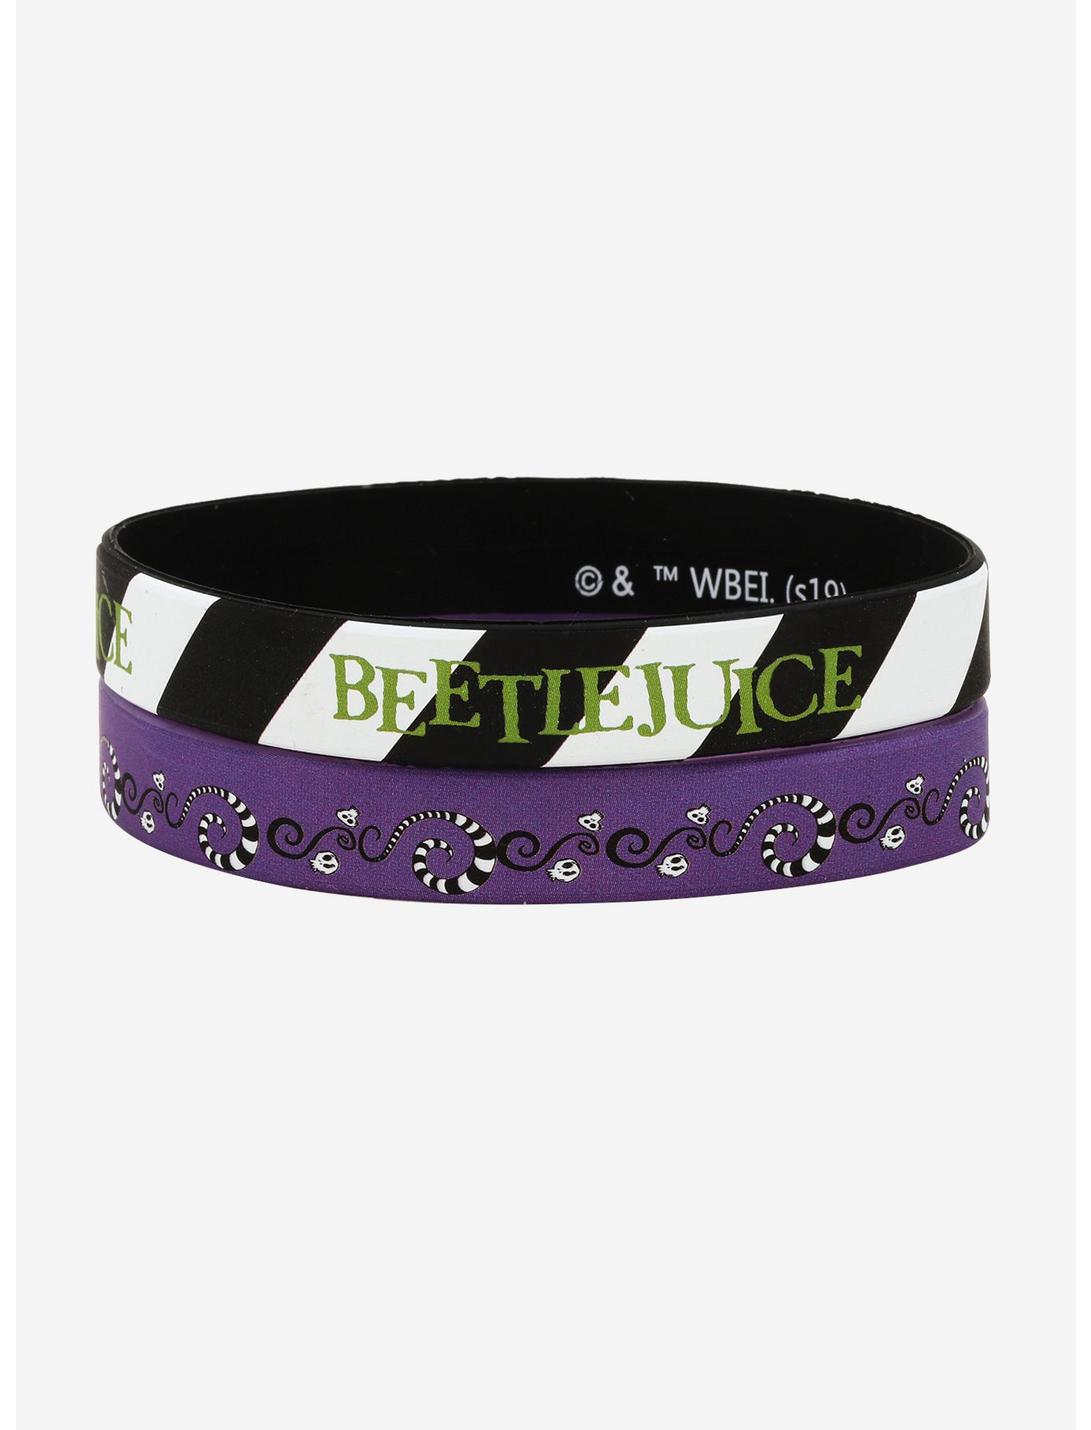 Beetlejuice Striped Bracelet Set, , hi-res